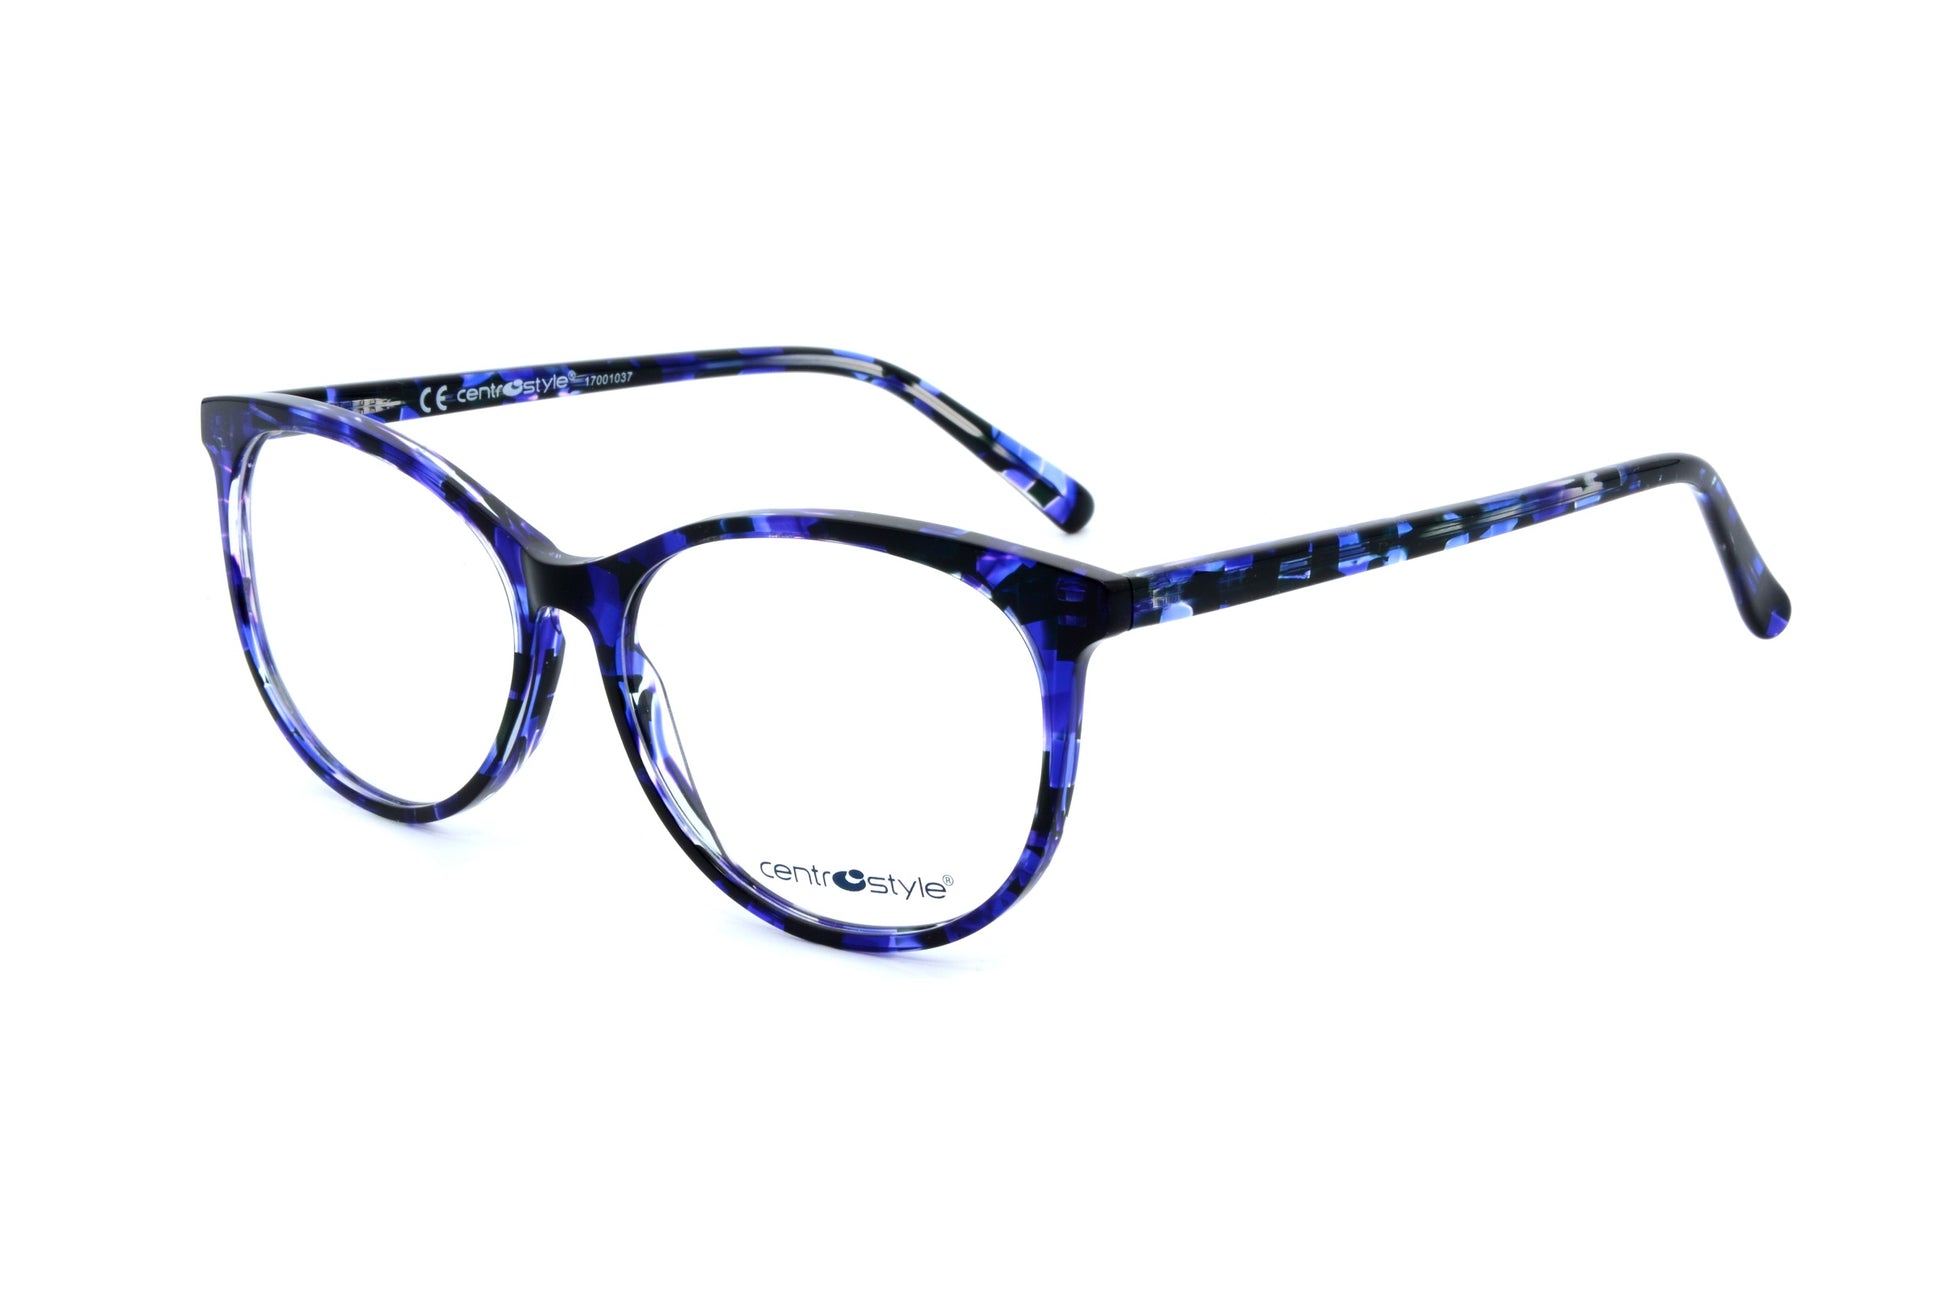 Centrostyle eyewear F000853042000 - Optics Trading